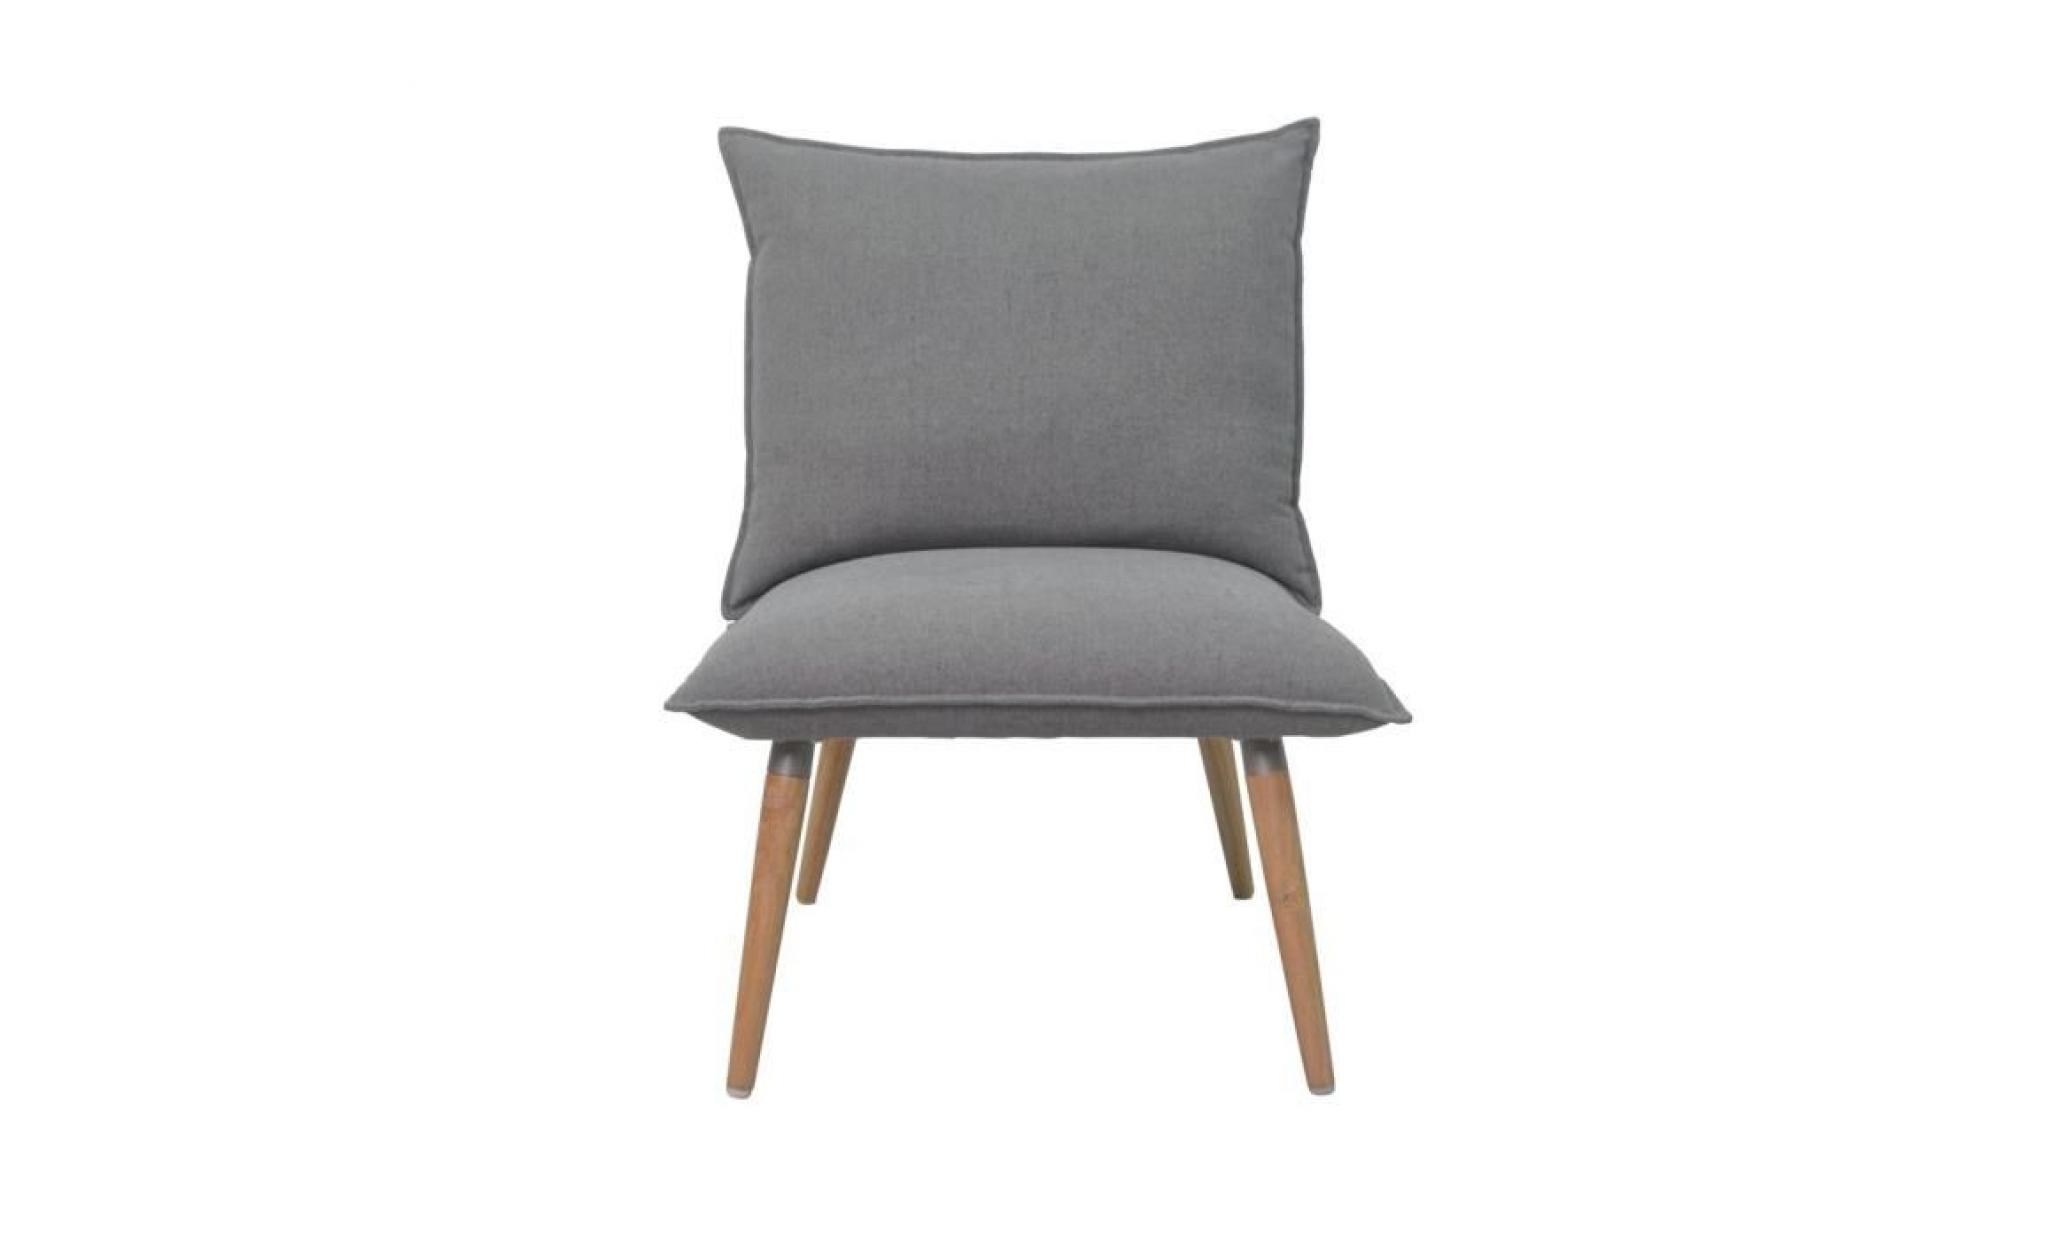 phil fauteuil en bois massif   tissu polyester   style vintage   l 64 x p 81 cm pas cher